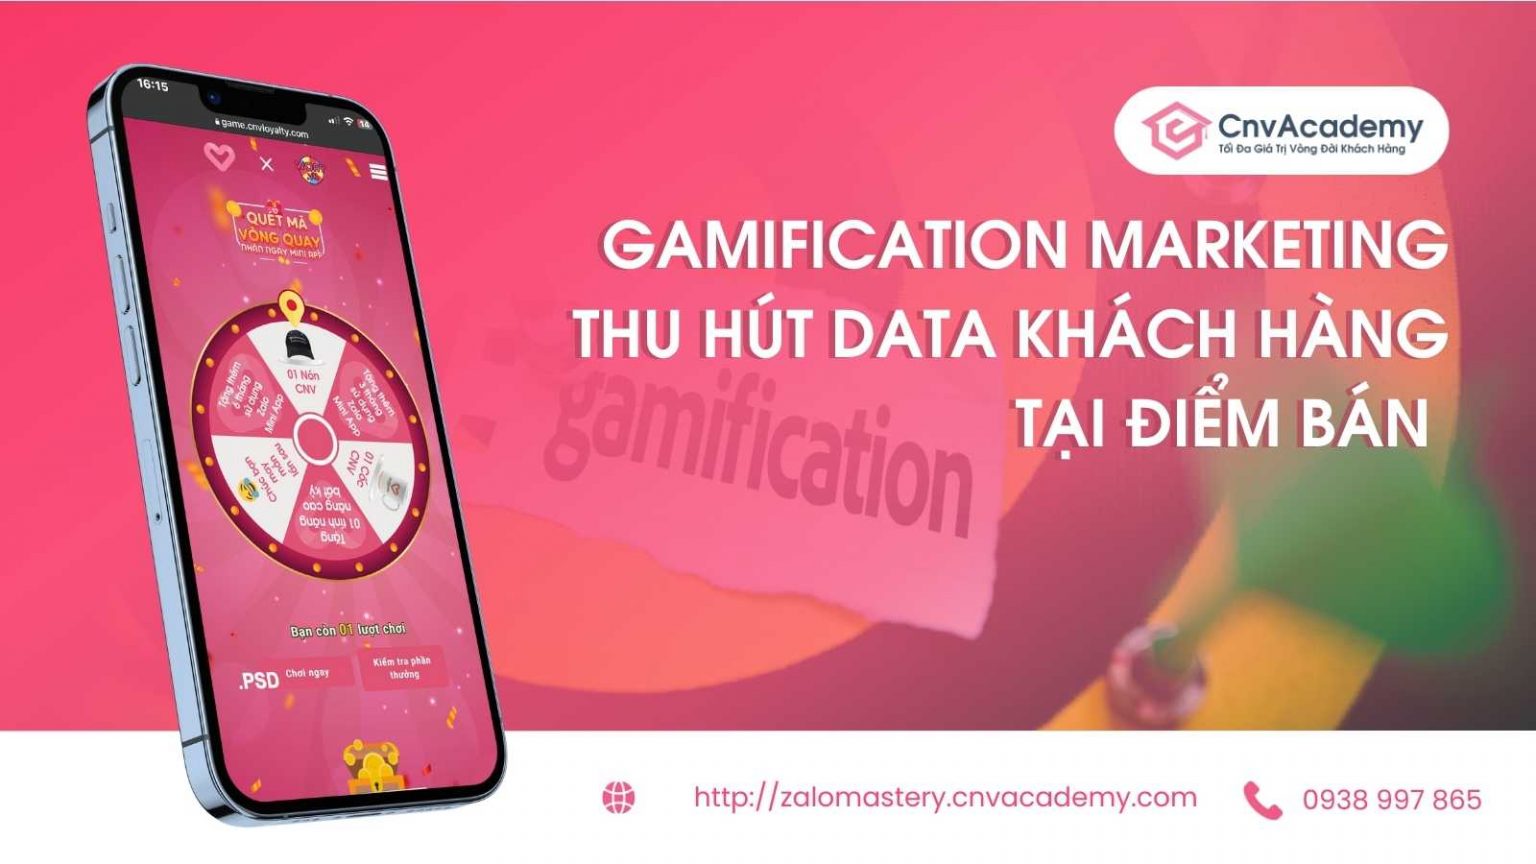 Chiến dịch Gamification Marketing thu hút data tại điểm bán